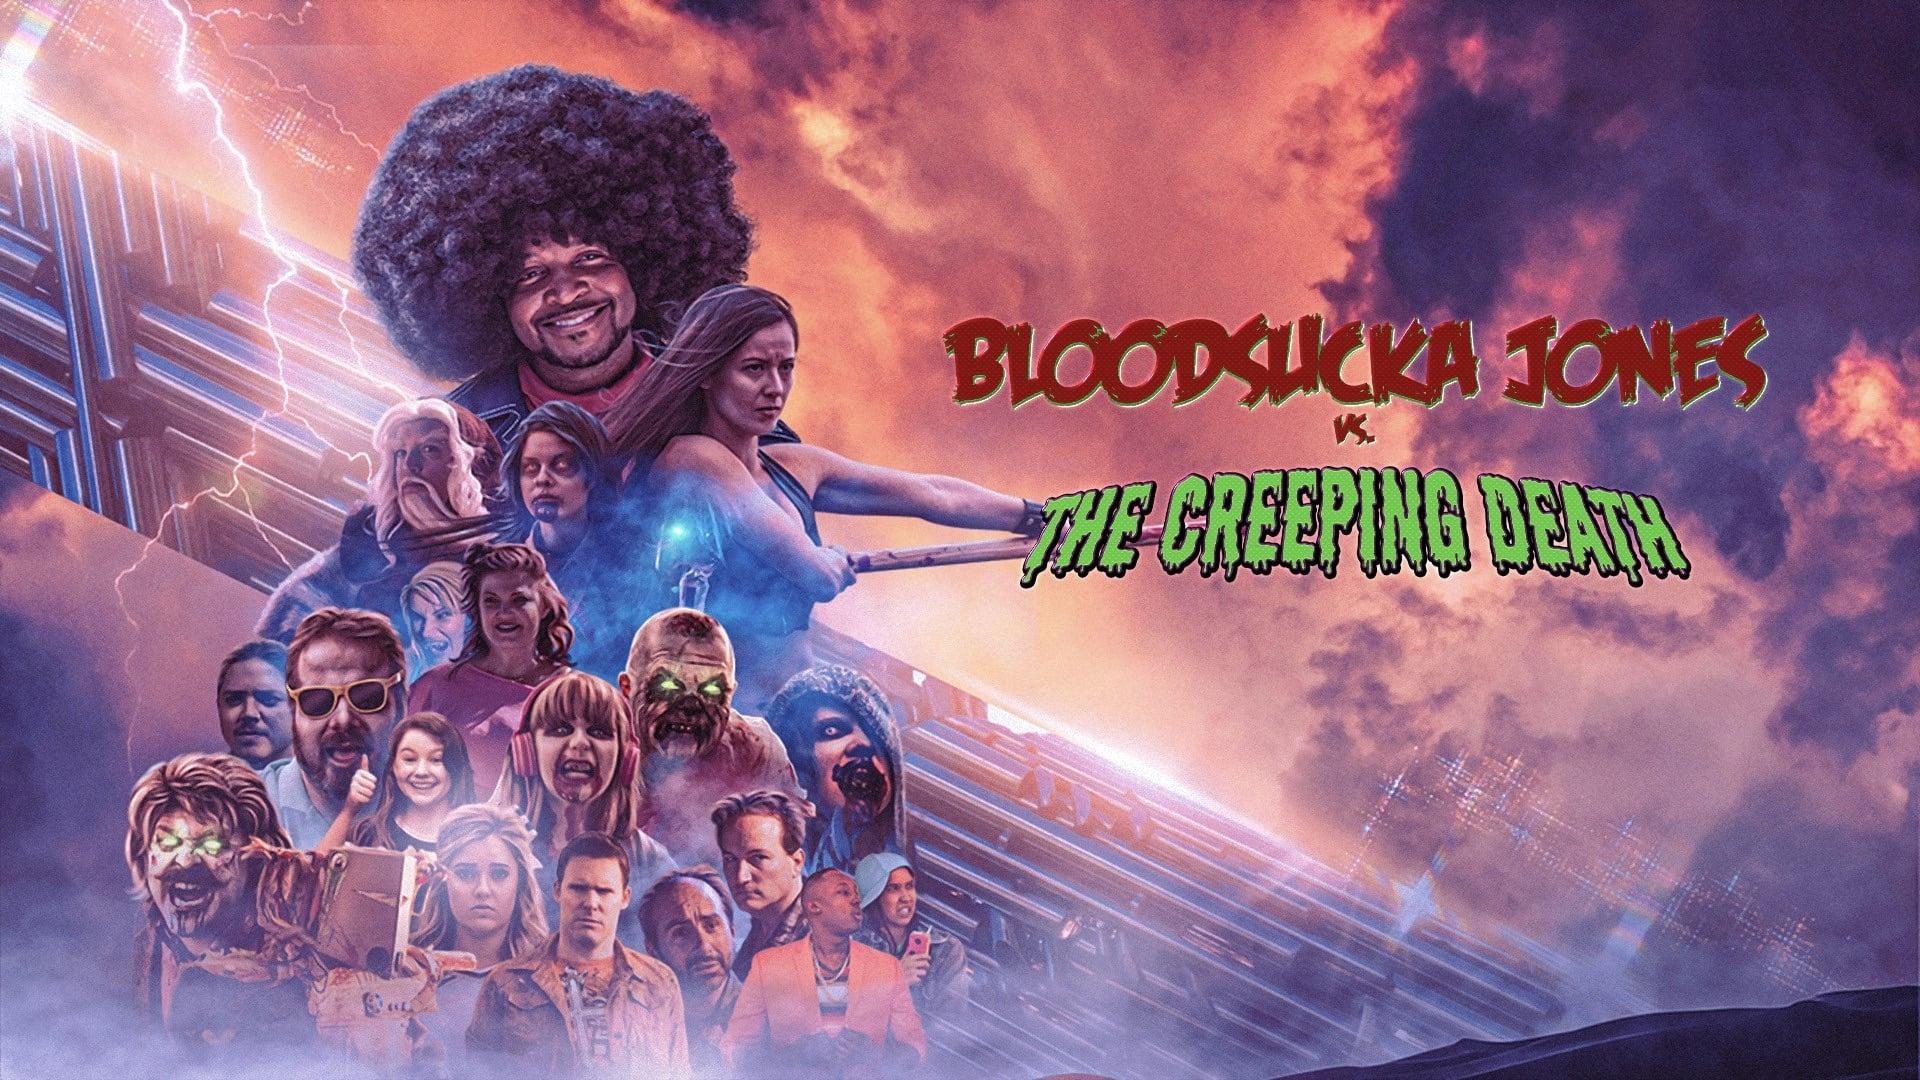 Bloodsucka Jones vs. The Creeping Death backdrop